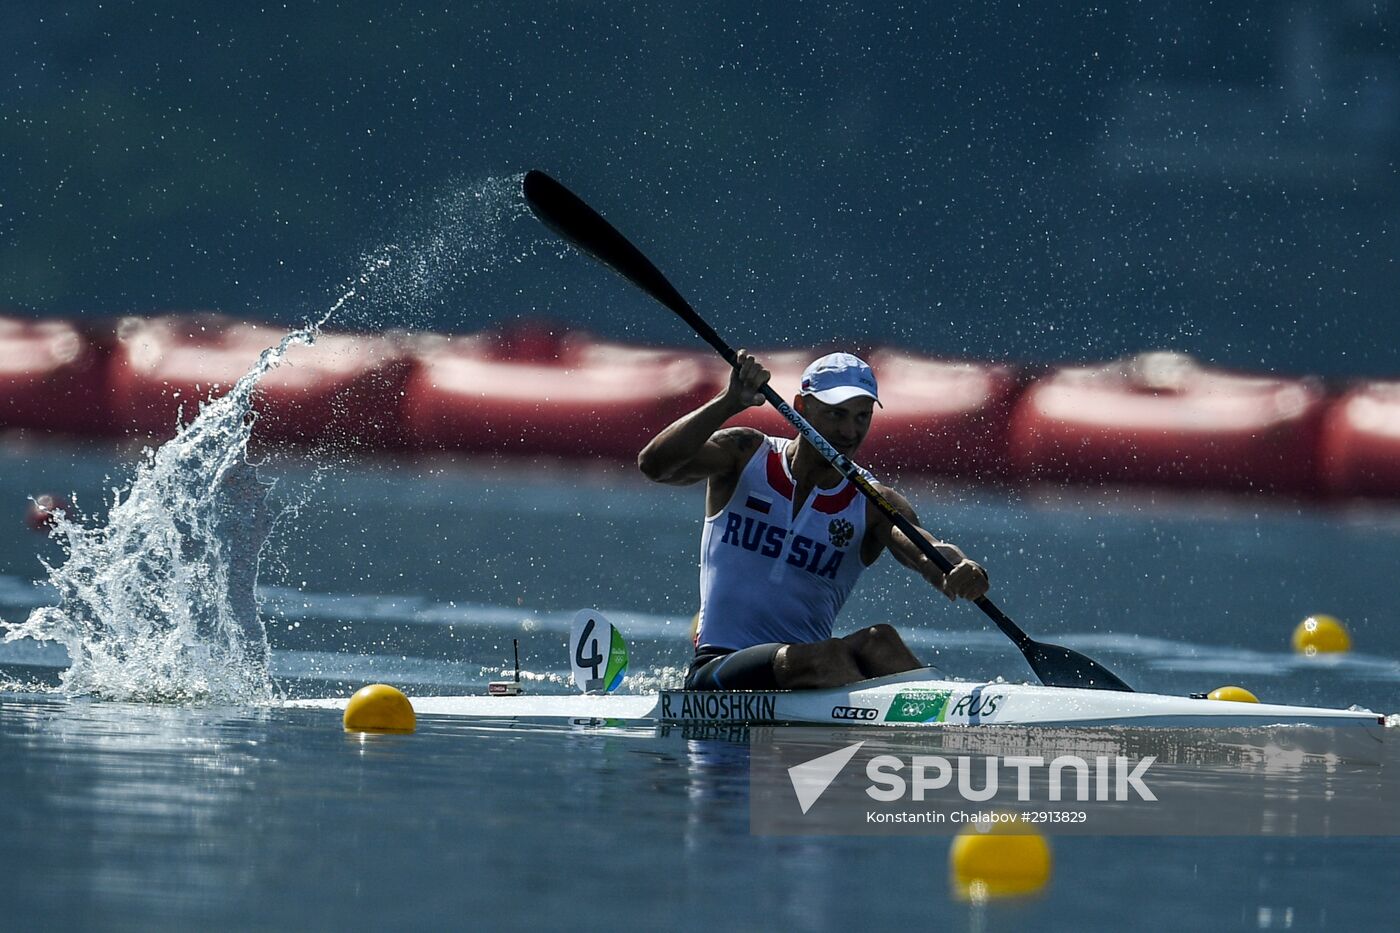 2016 Summer Olympics. Canoe sprint